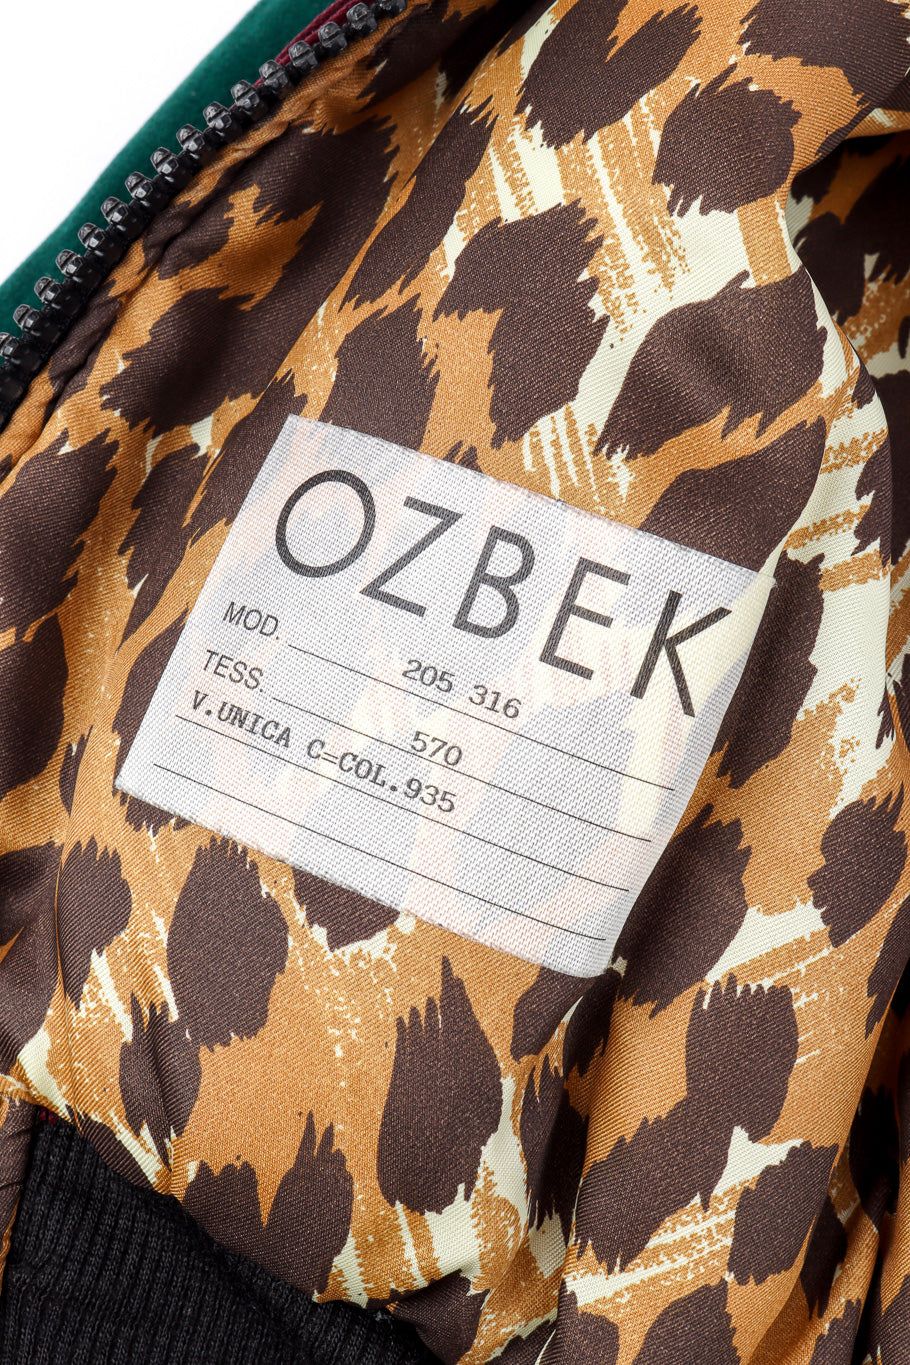 1989 F/W Sequined Velvet Bomber by Ozbek inner printed tag @recessla